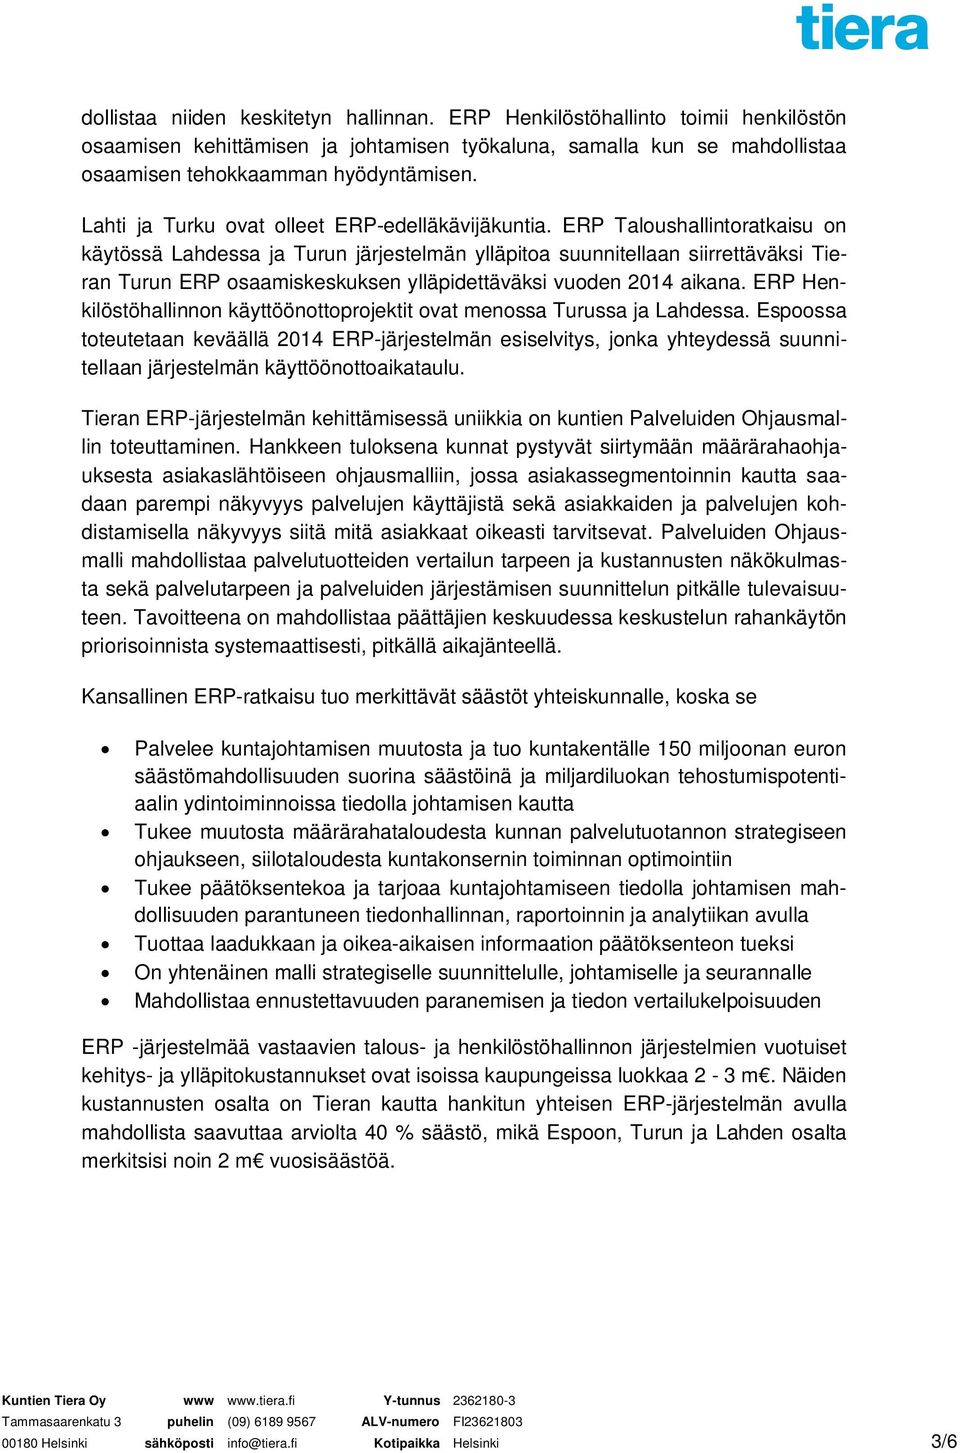 ERP Taloushallintoratkaisu on käytössä Lahdessa ja Turun järjestelmän ylläpitoa suunnitellaan siirrettäväksi Tieran Turun ERP osaamiskeskuksen ylläpidettäväksi vuoden 2014 aikana.